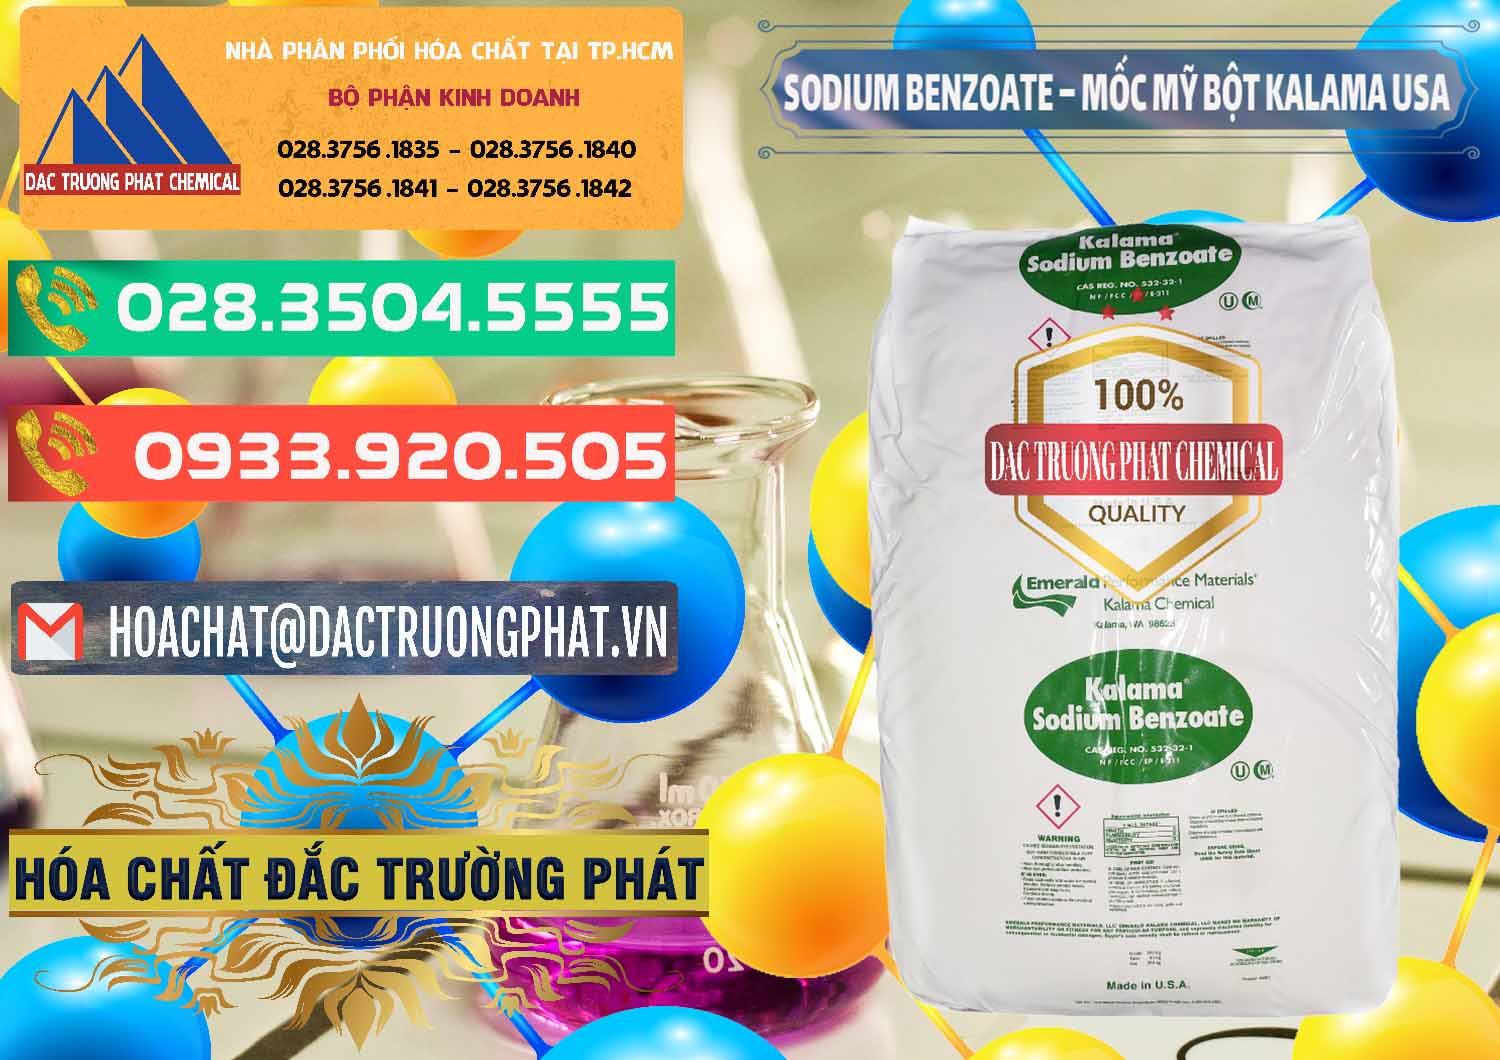 Cty chuyên bán - phân phối Sodium Benzoate - Mốc Bột Kalama Food Grade Mỹ Usa - 0136 - Công ty chuyên cung cấp _ bán hóa chất tại TP.HCM - congtyhoachat.com.vn